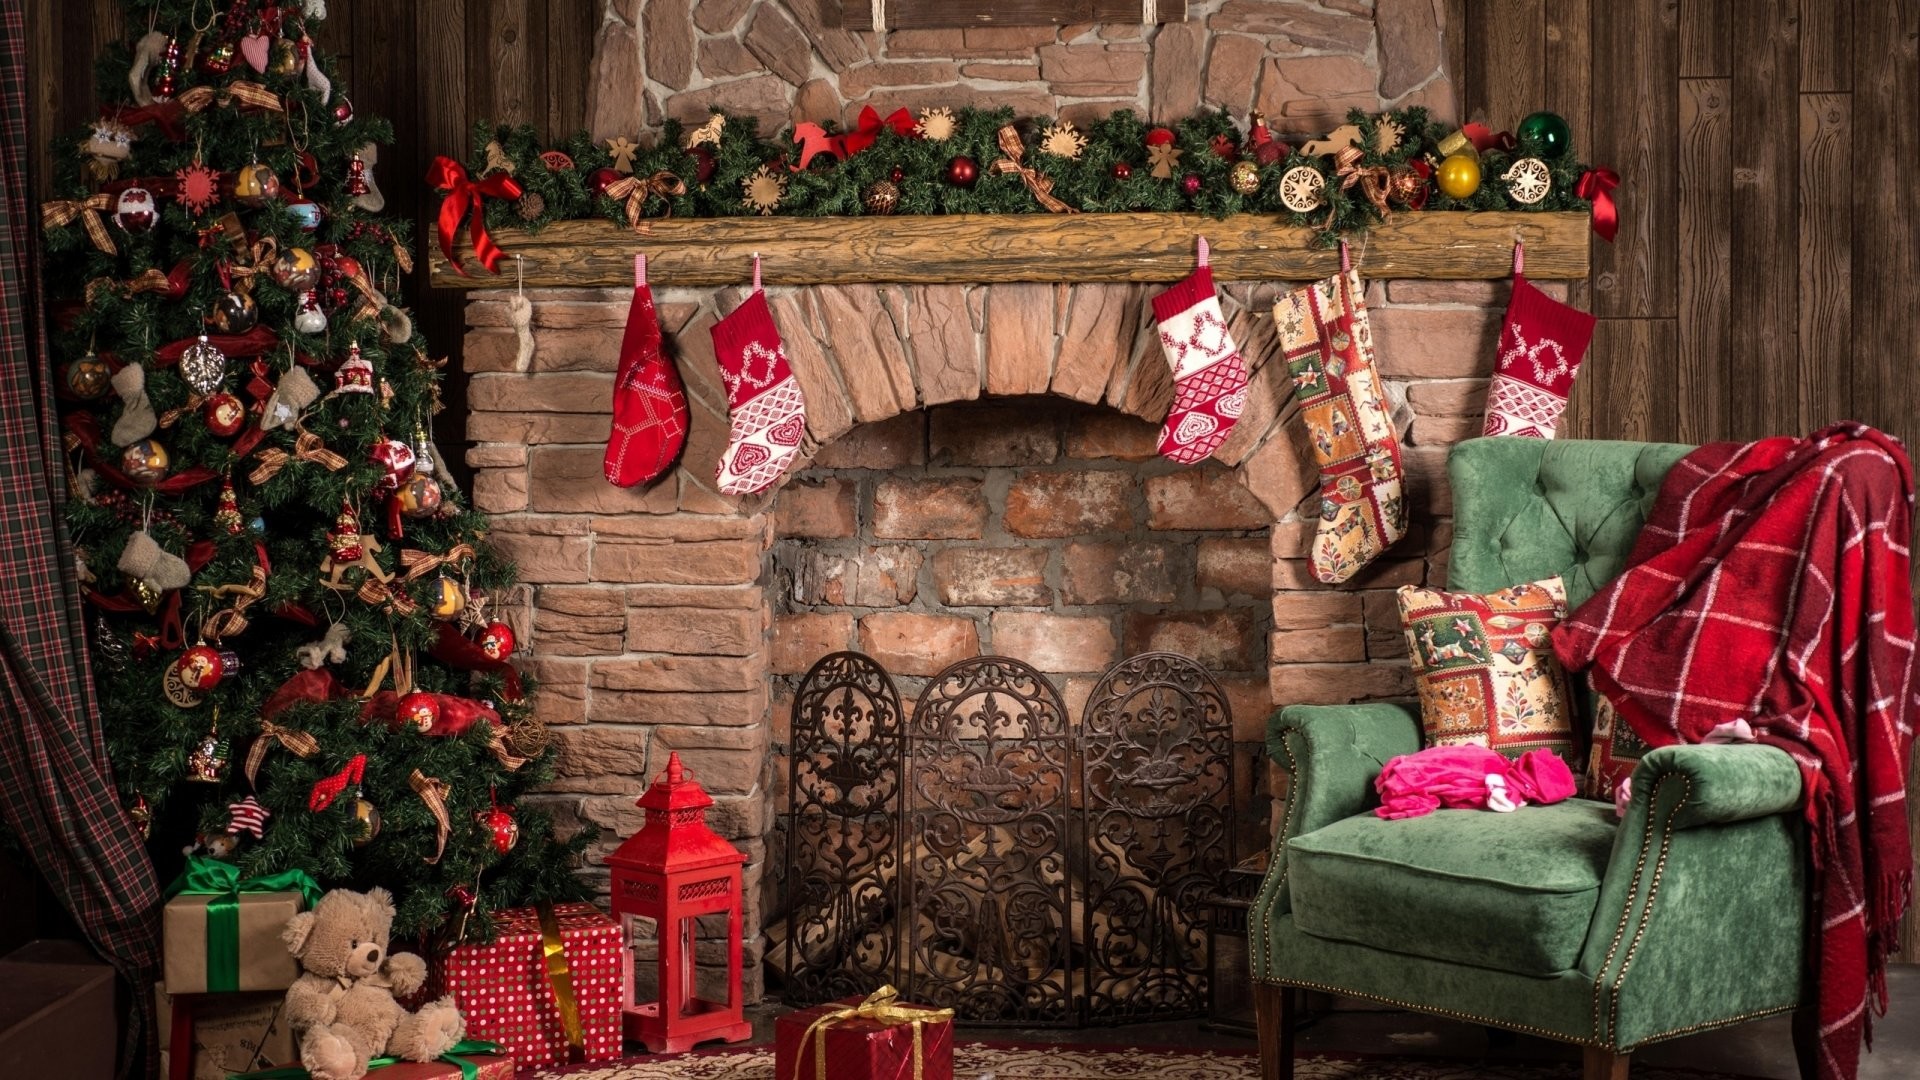 Với hình nền Giáng sinh, bạn có thể tận hưởng không khí thật sự mùa đông. Hình nền Giáng sinh sang trọng, dễ thương và đầy sáng tạo sẽ mang đến cho bạn và người thân của mình sự thoải mái và giải trí trong một không khí đúng nghĩa của lễ hội.